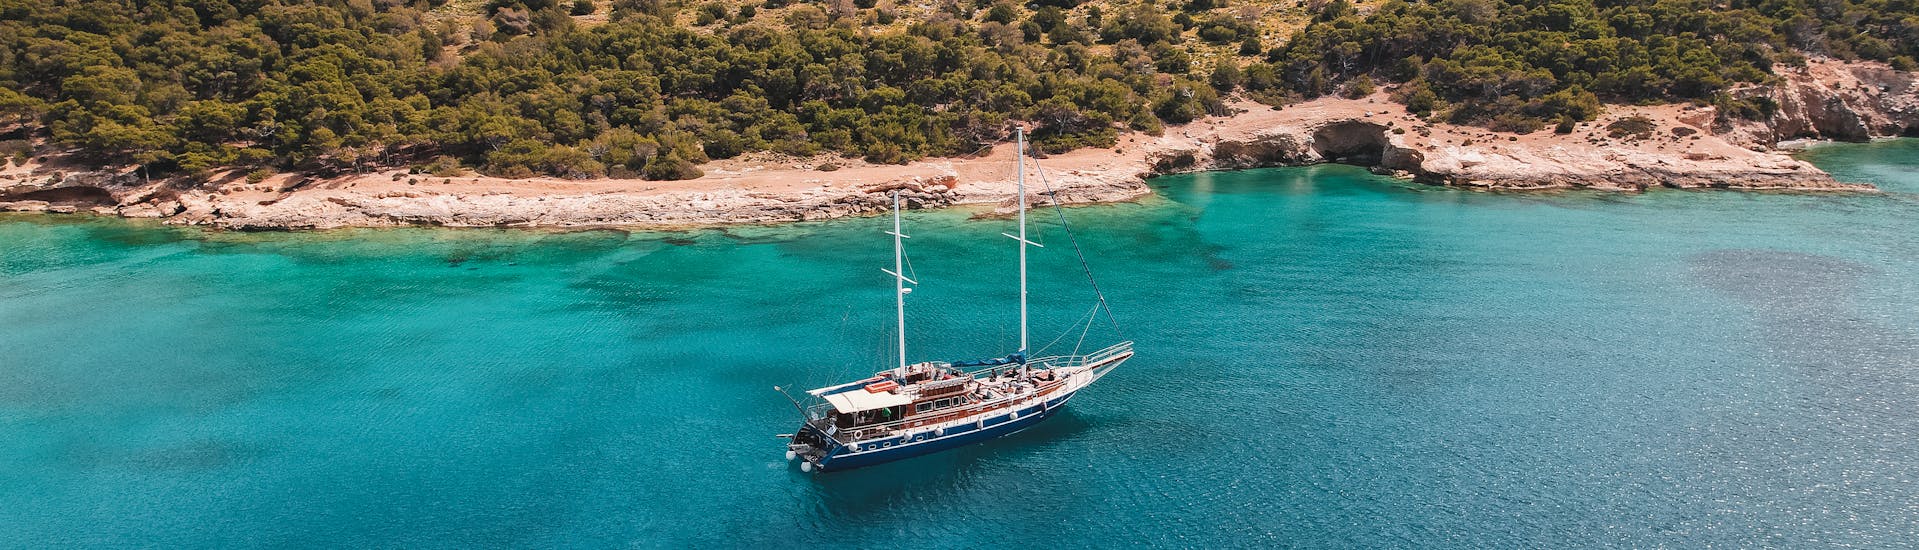 Het eiland Moni met de boot, die bezocht kan worden op de zeiltocht naar Agistri, Moni en Aegina met All Day Cruises.